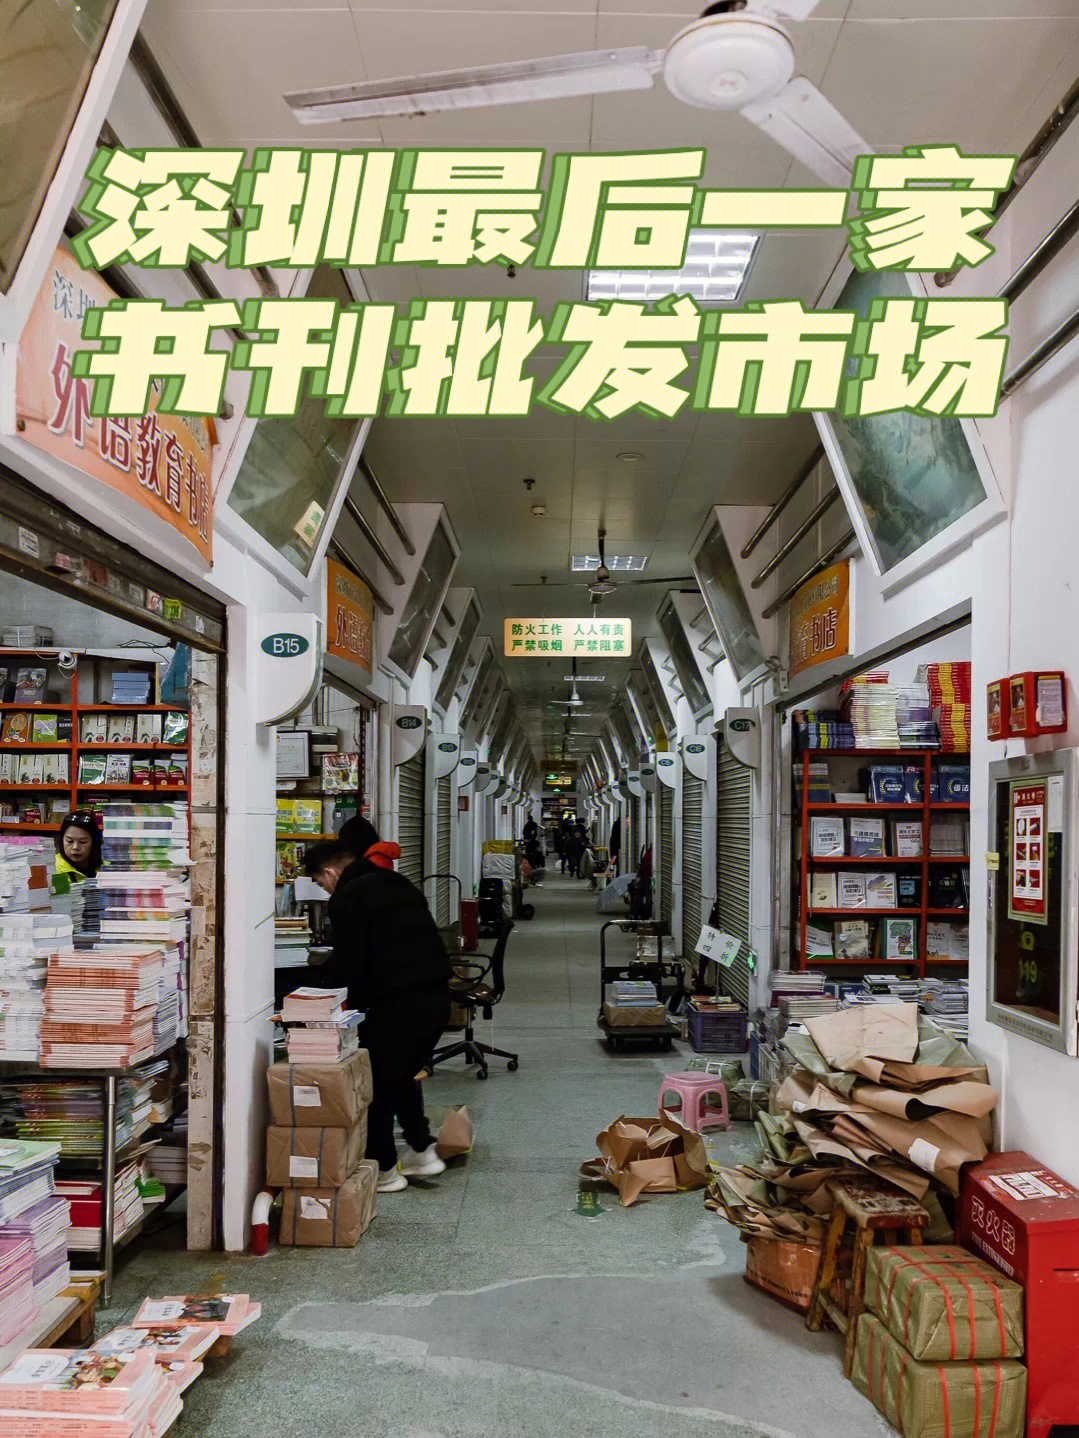 位于八卦岭的94深圳市书刊批发市场,从1996年至今,这里曾是深圳最大